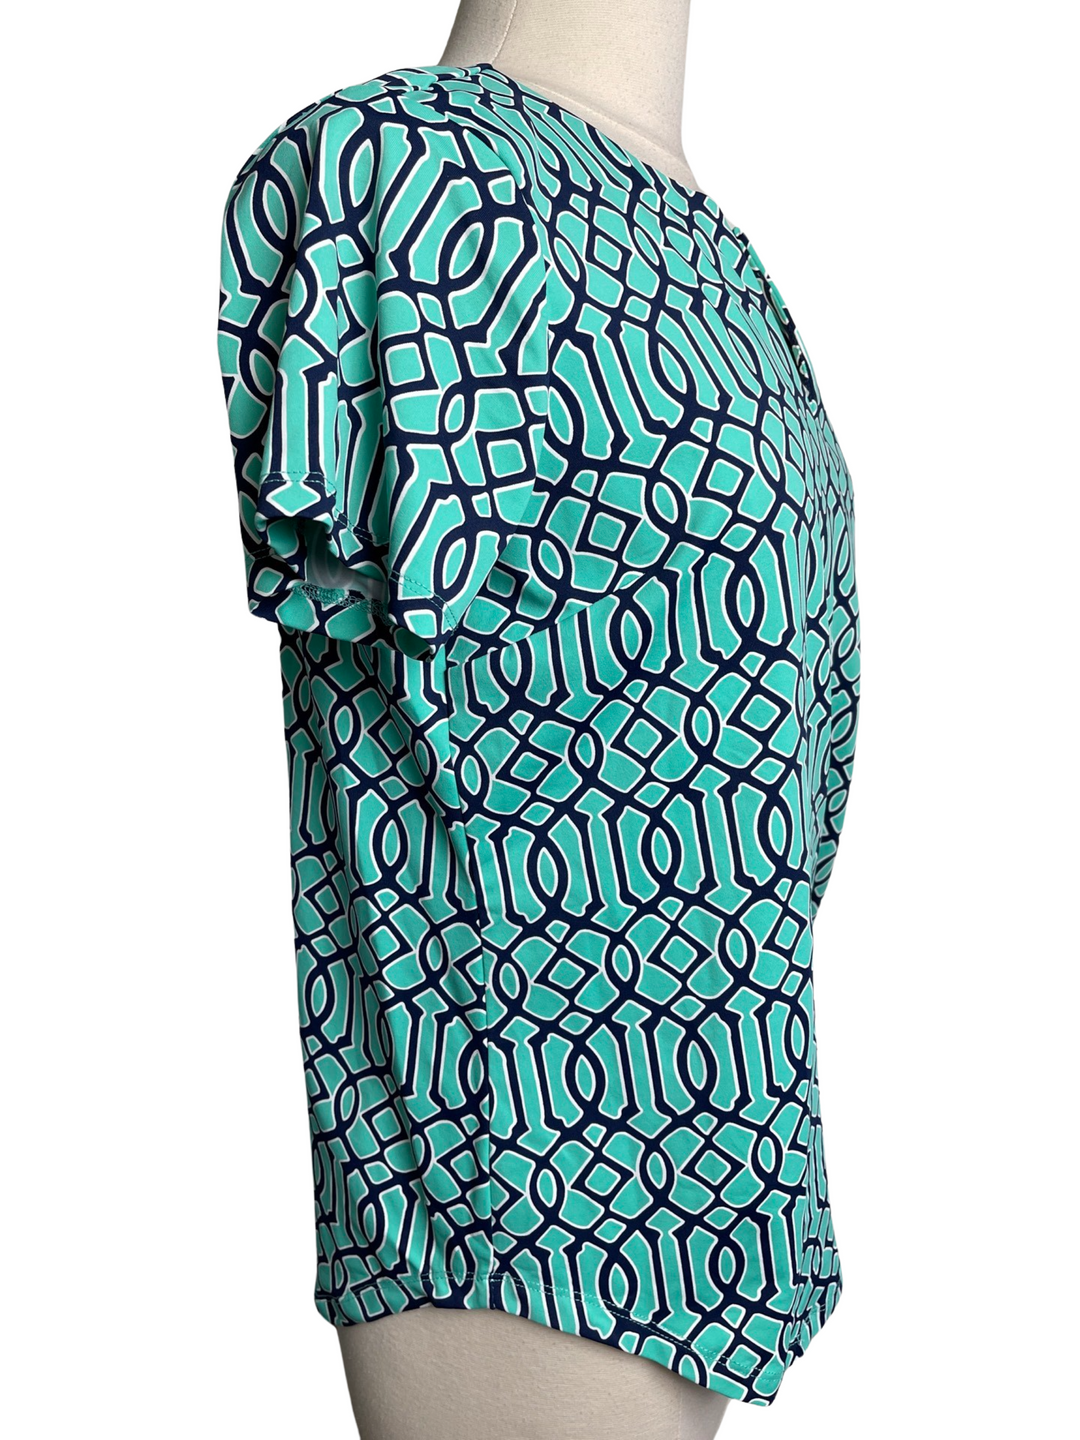 Lulu B Turquoise Navy Short Sleeve Top- Large - Skorzie